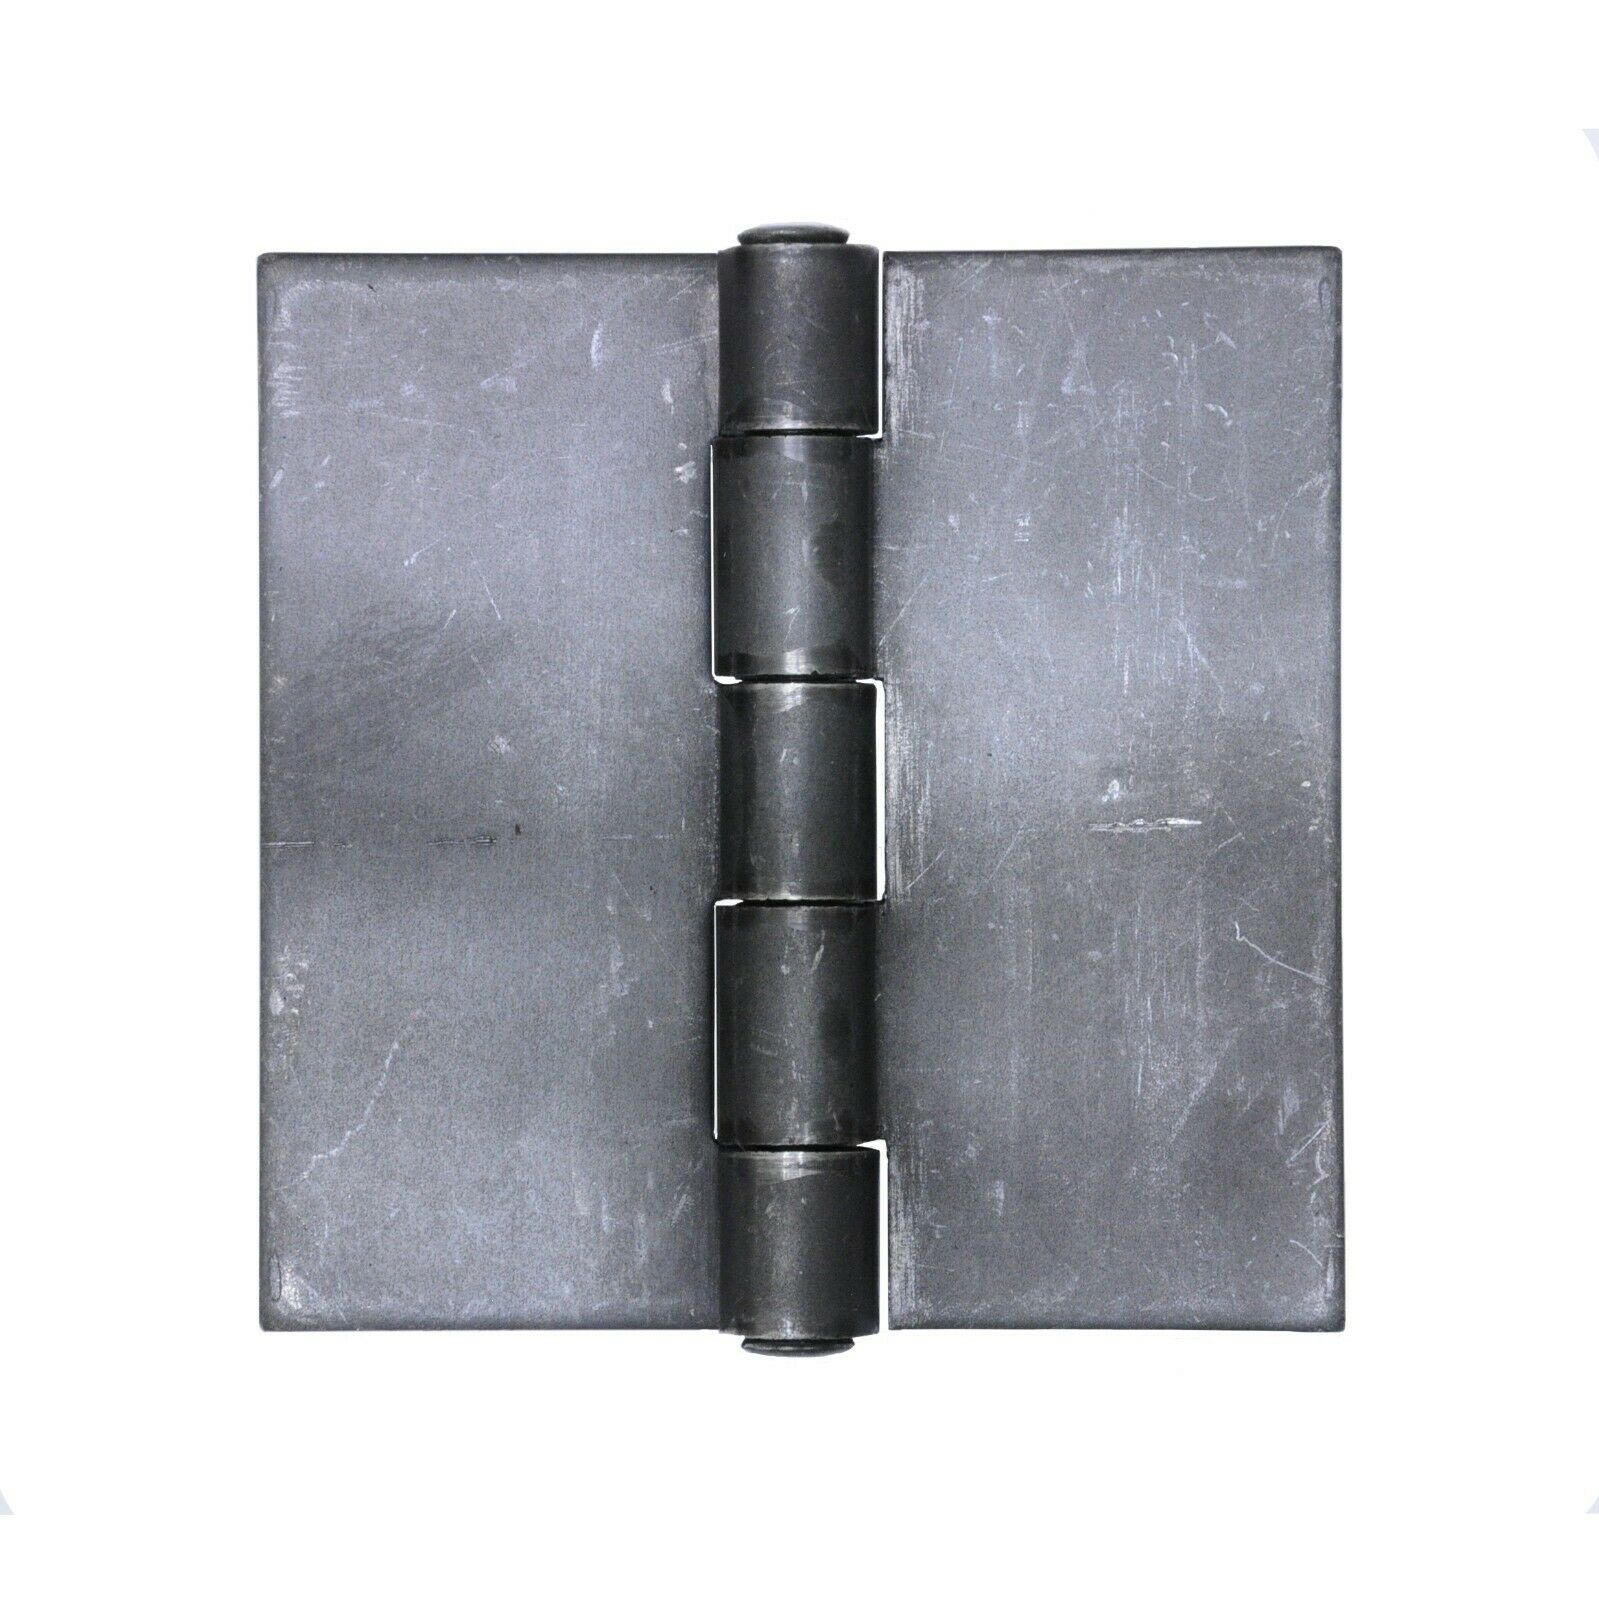 Butt Hinge Weld On Flat Steel Heavy Duty Metal Door | 3x2 3x3 4x4 5x5 6x6 Pair